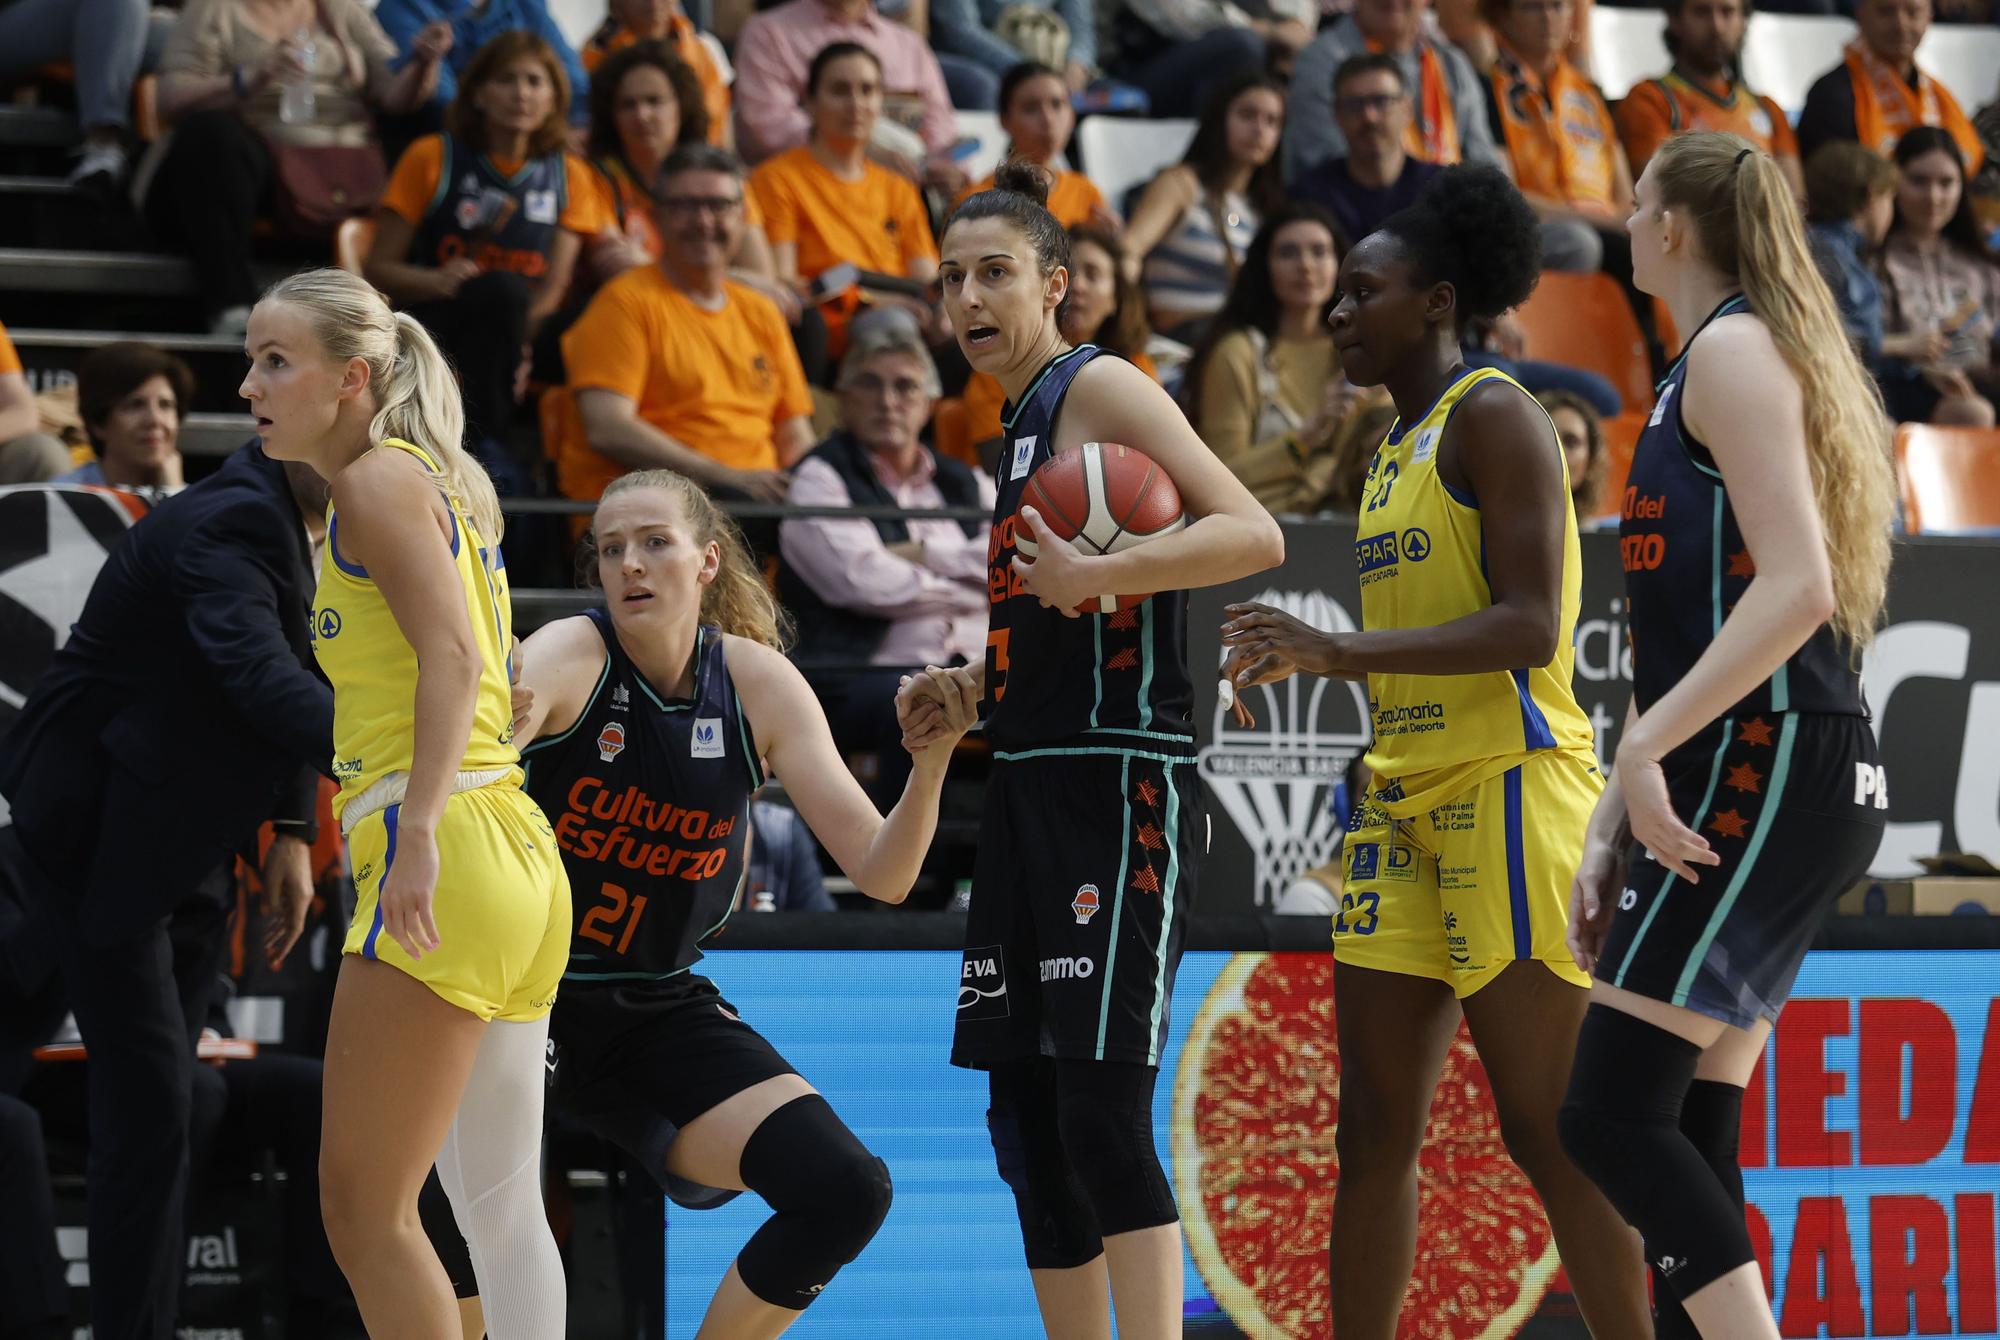 Valencia BC - Spar Gran Canaria de Liga Femenina Endesa de baloncesto